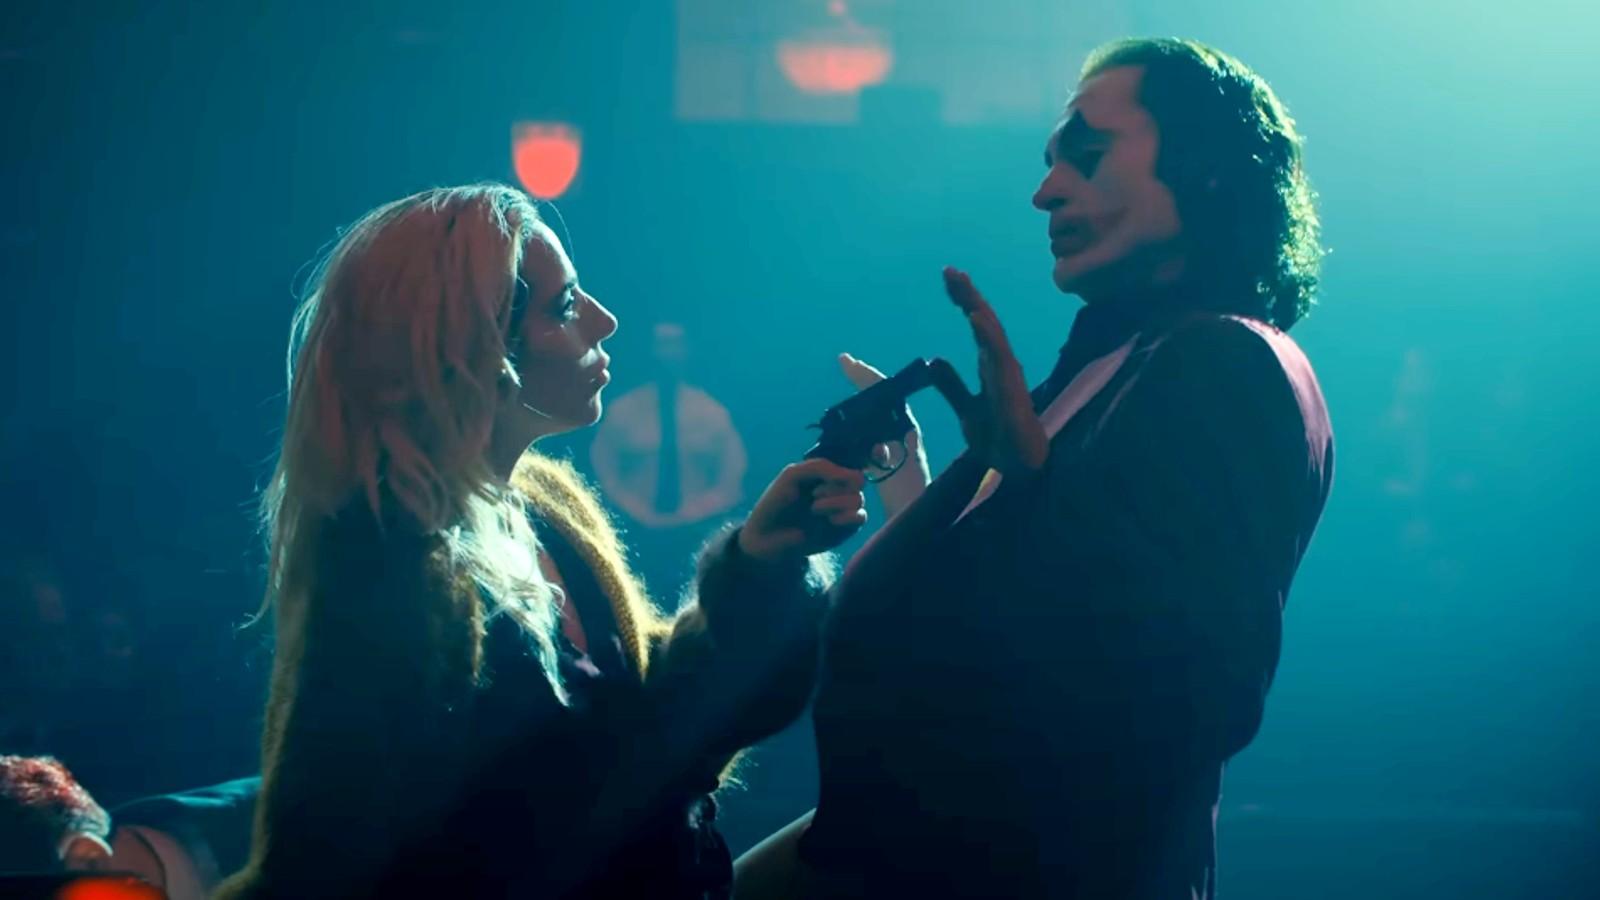 Harley Quinn and Joker in the Joker 2 trailer